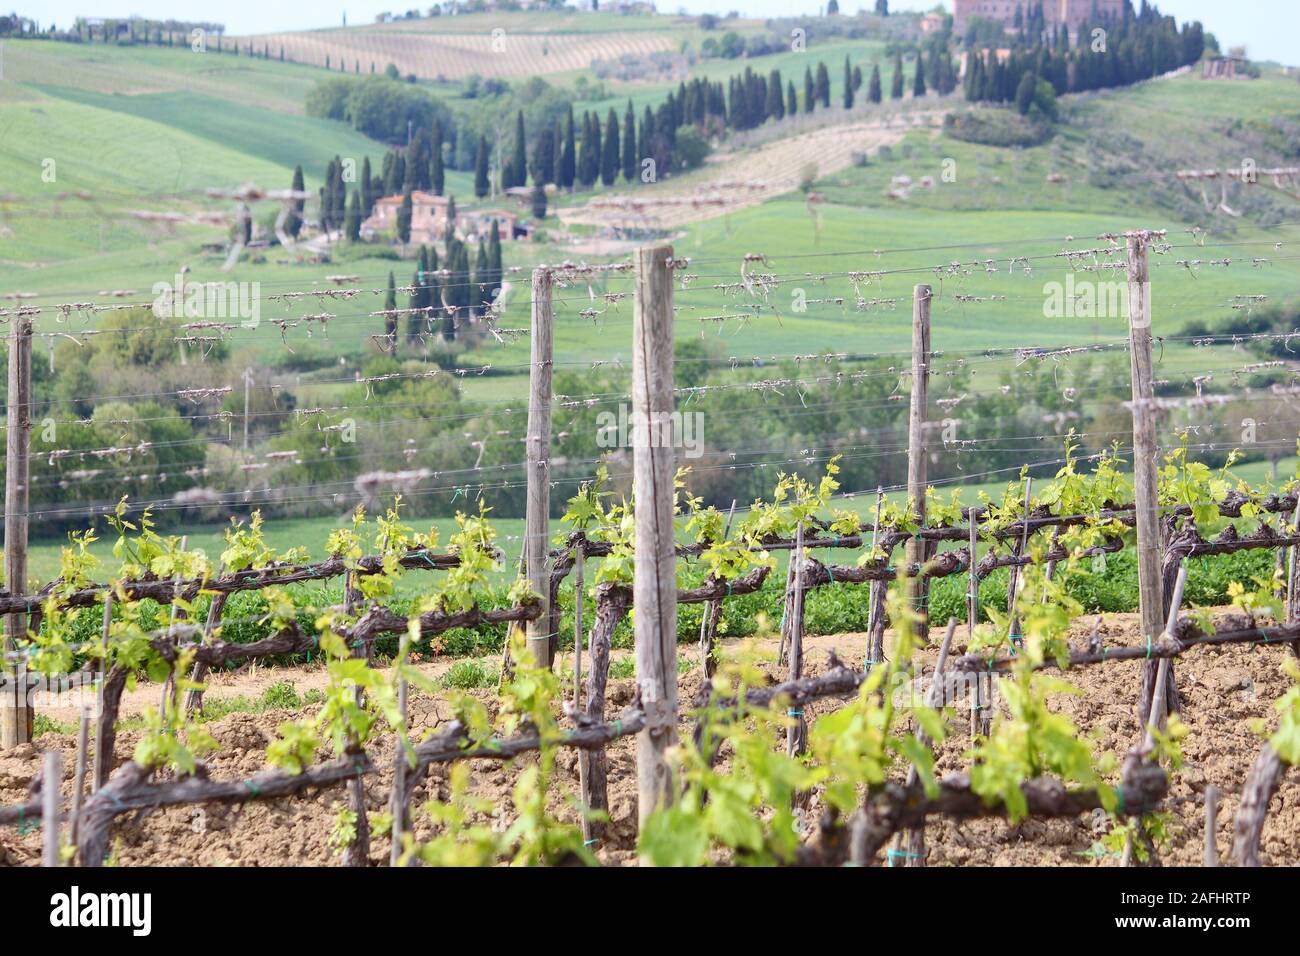 Vigneto in Toscana - Italia rurale. Superficie agricola in provincia di Siena. Foto Stock